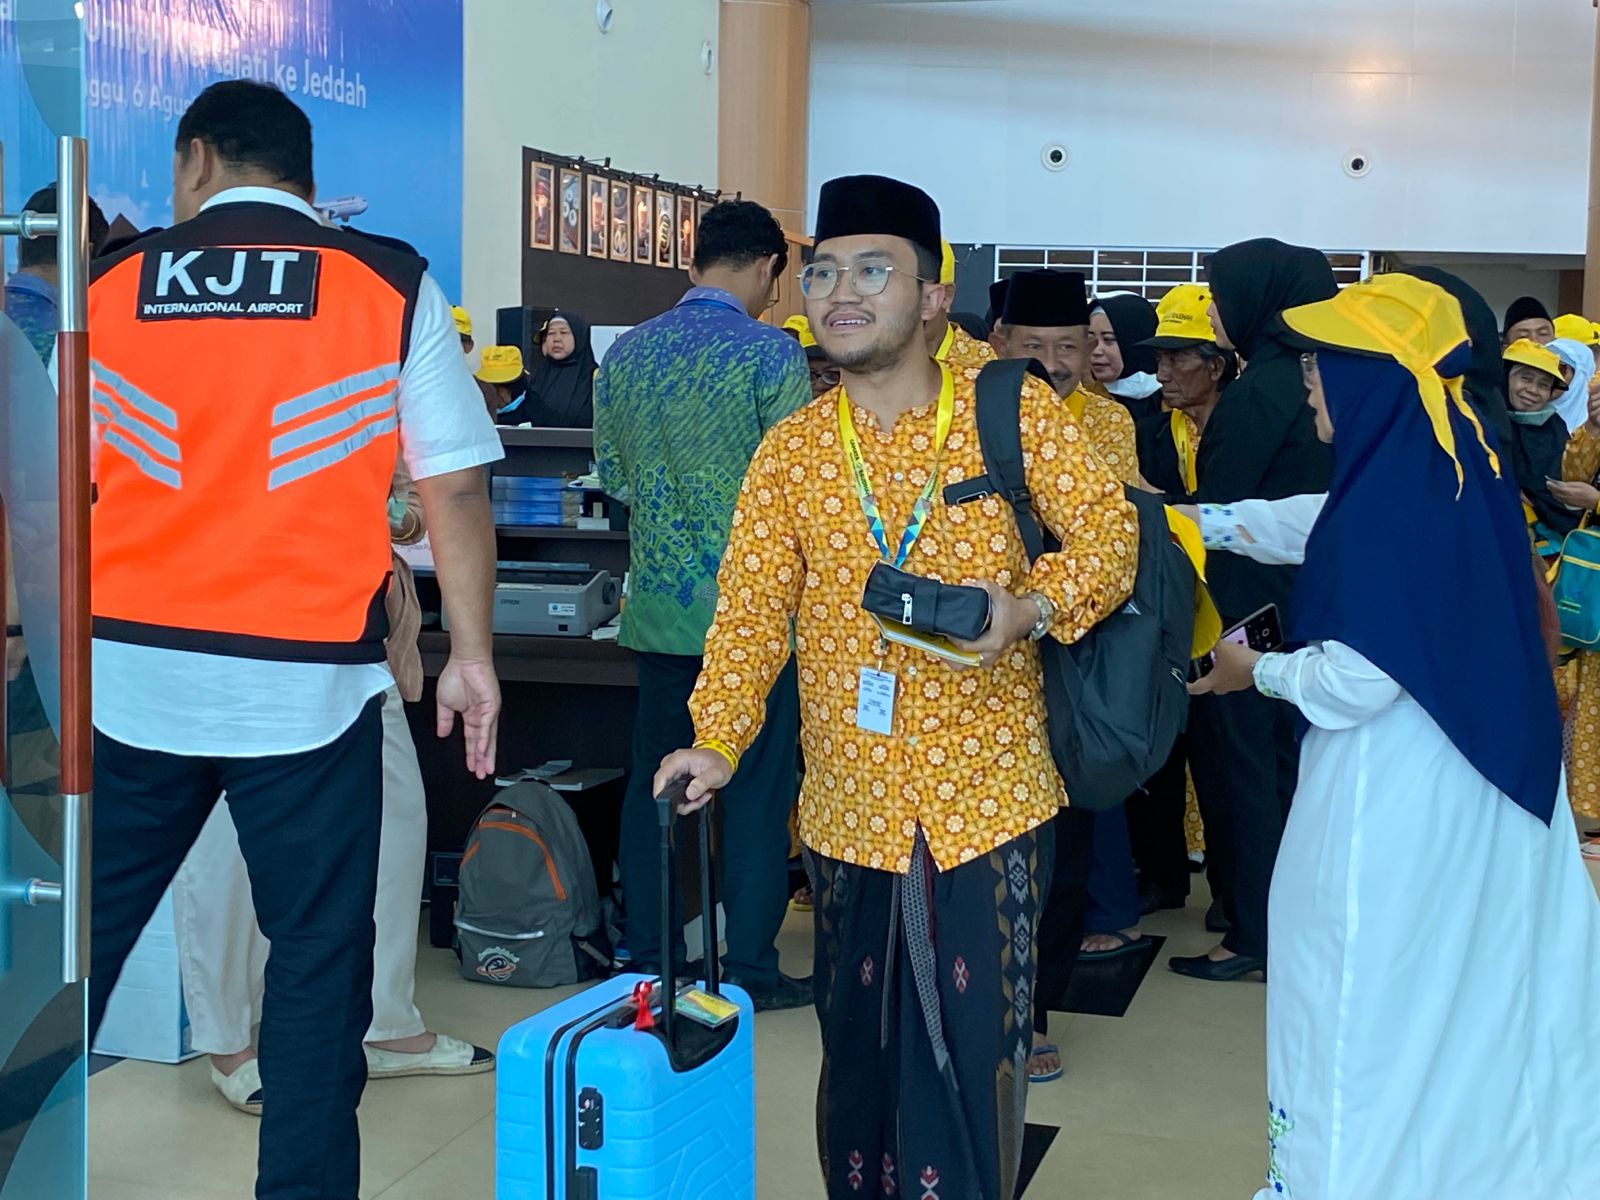 Cahaya Raudhah Jadi Travel Pertama yang Melakukan Penerbangan Jamaah Umroh di Bandara Internasional Kertajati